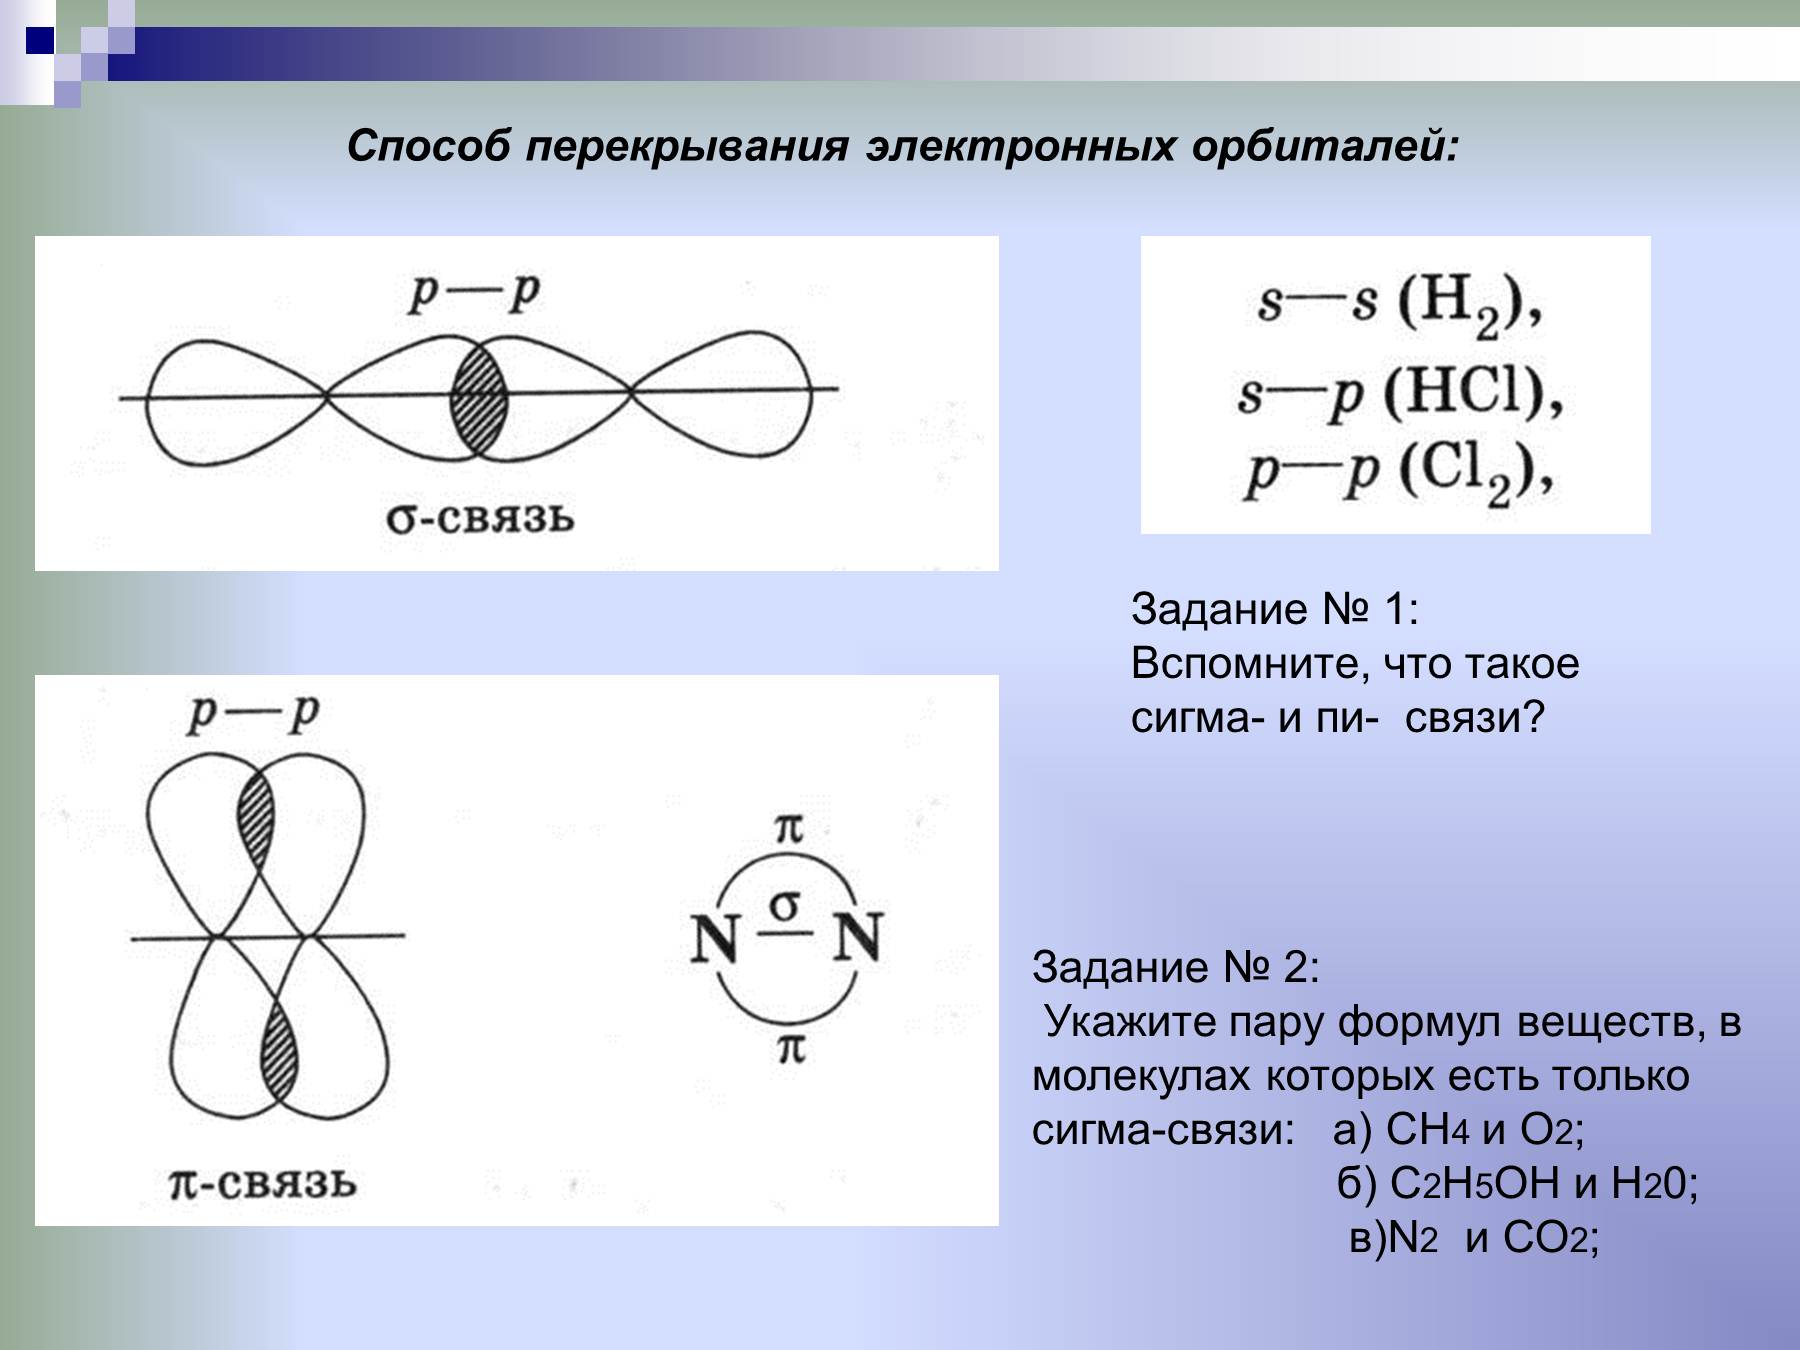 1 π связь. Типы связей в химии Сигма и пи. Альфа и пи связи в химии. Схема образования Сигма связи. Способы перекрывания электронных орбиталей (Сигма, пи).